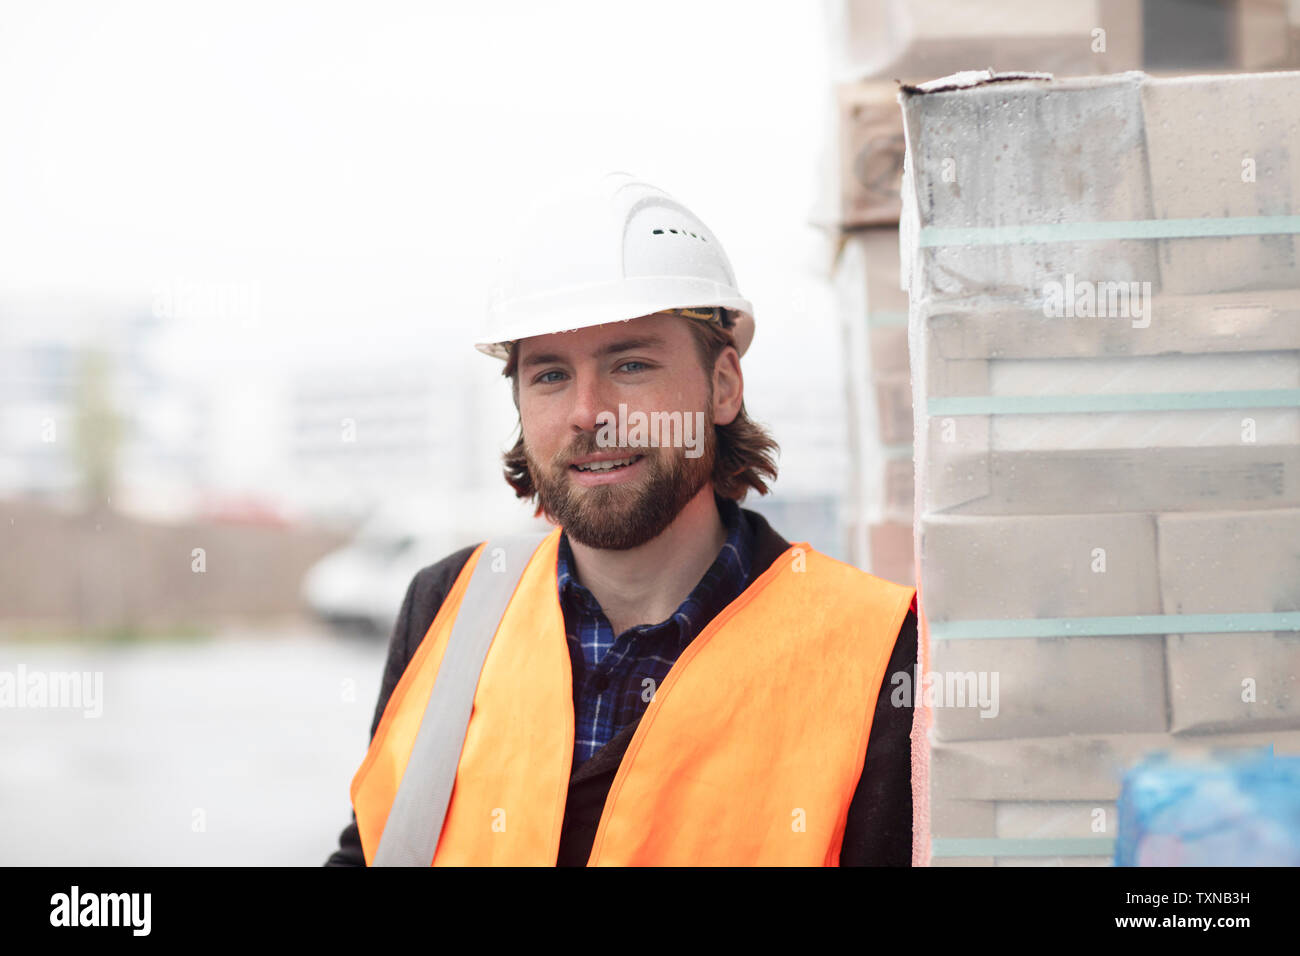 Mid adult male ingénieur civil appuyé contre empilés sur des matériaux de construction construction site, portrait Banque D'Images